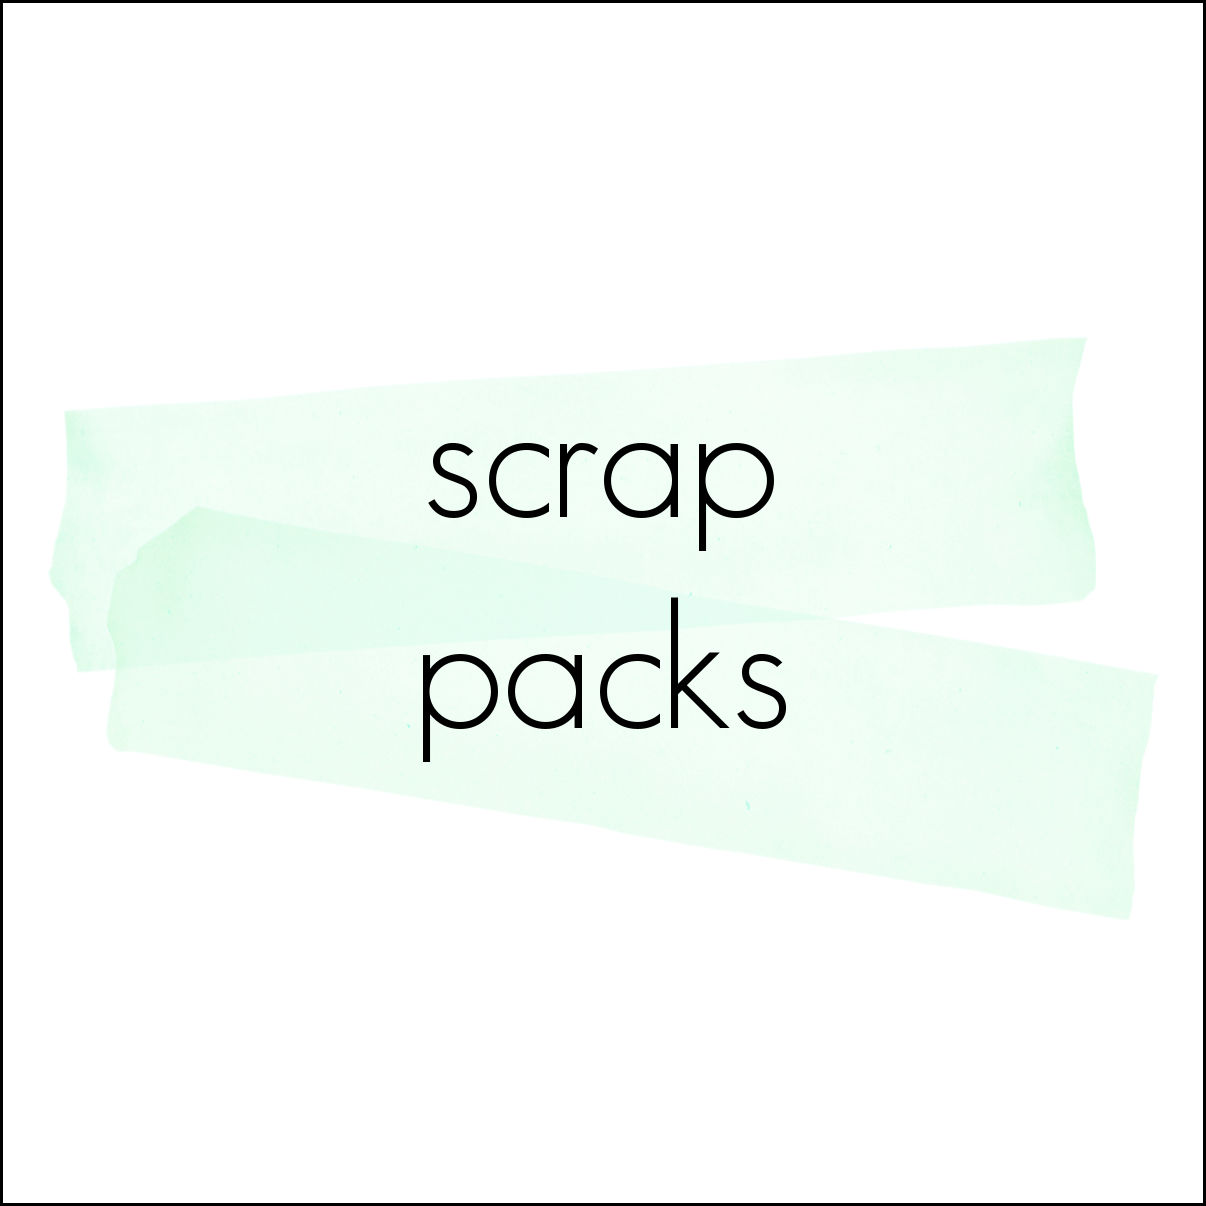 All Scrap Packs